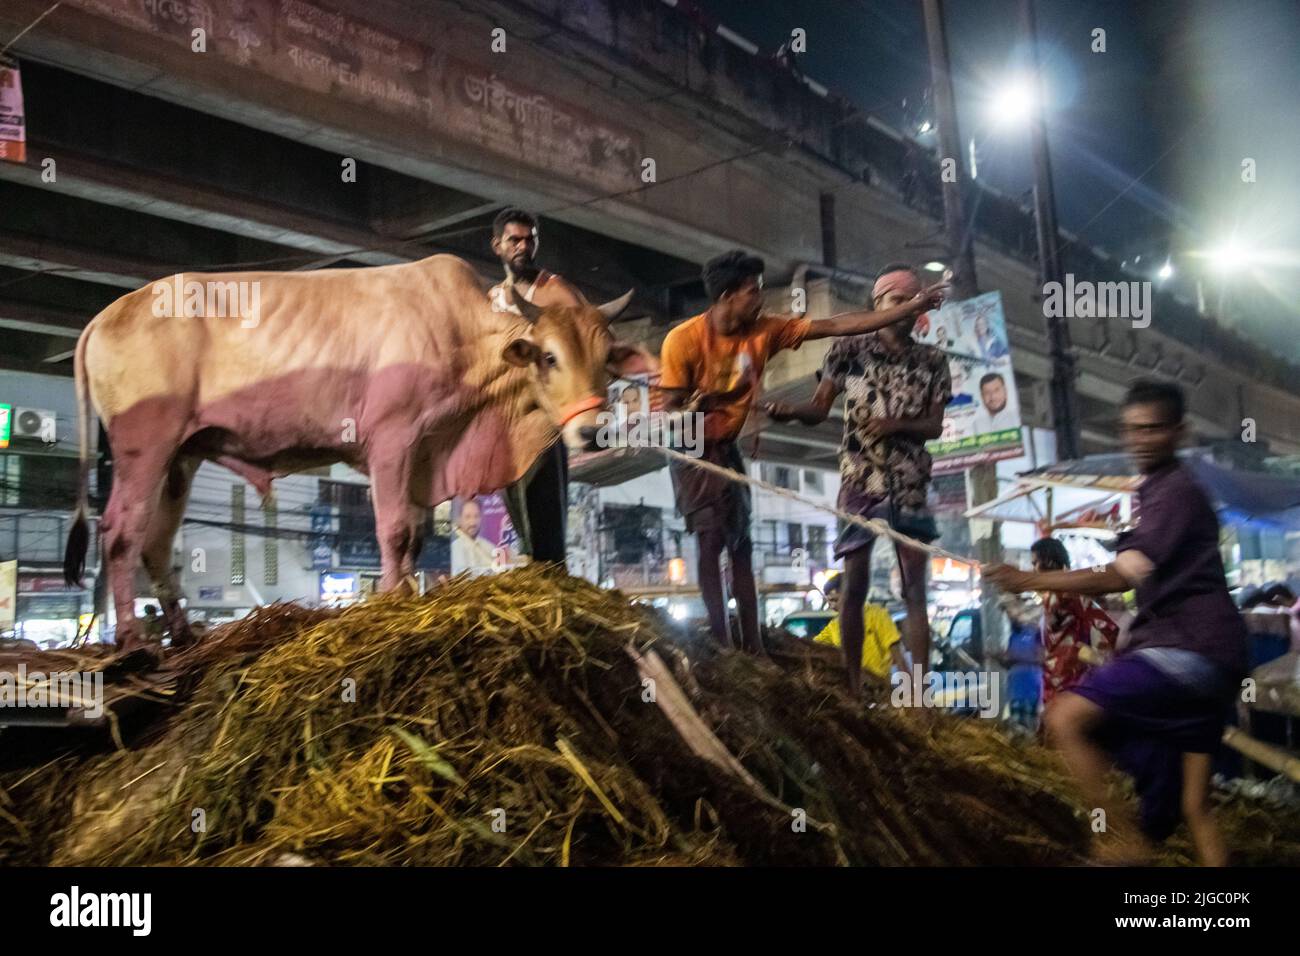 Anbieter, die Kühe auf dem Markt für EID-UL-ADHA verkaufen. EID-UL-ADHA ist 2. das größte Fest für Muslime. Bei diesem Fest opfern die Menschen Kühe und Ziegen. Stockfoto